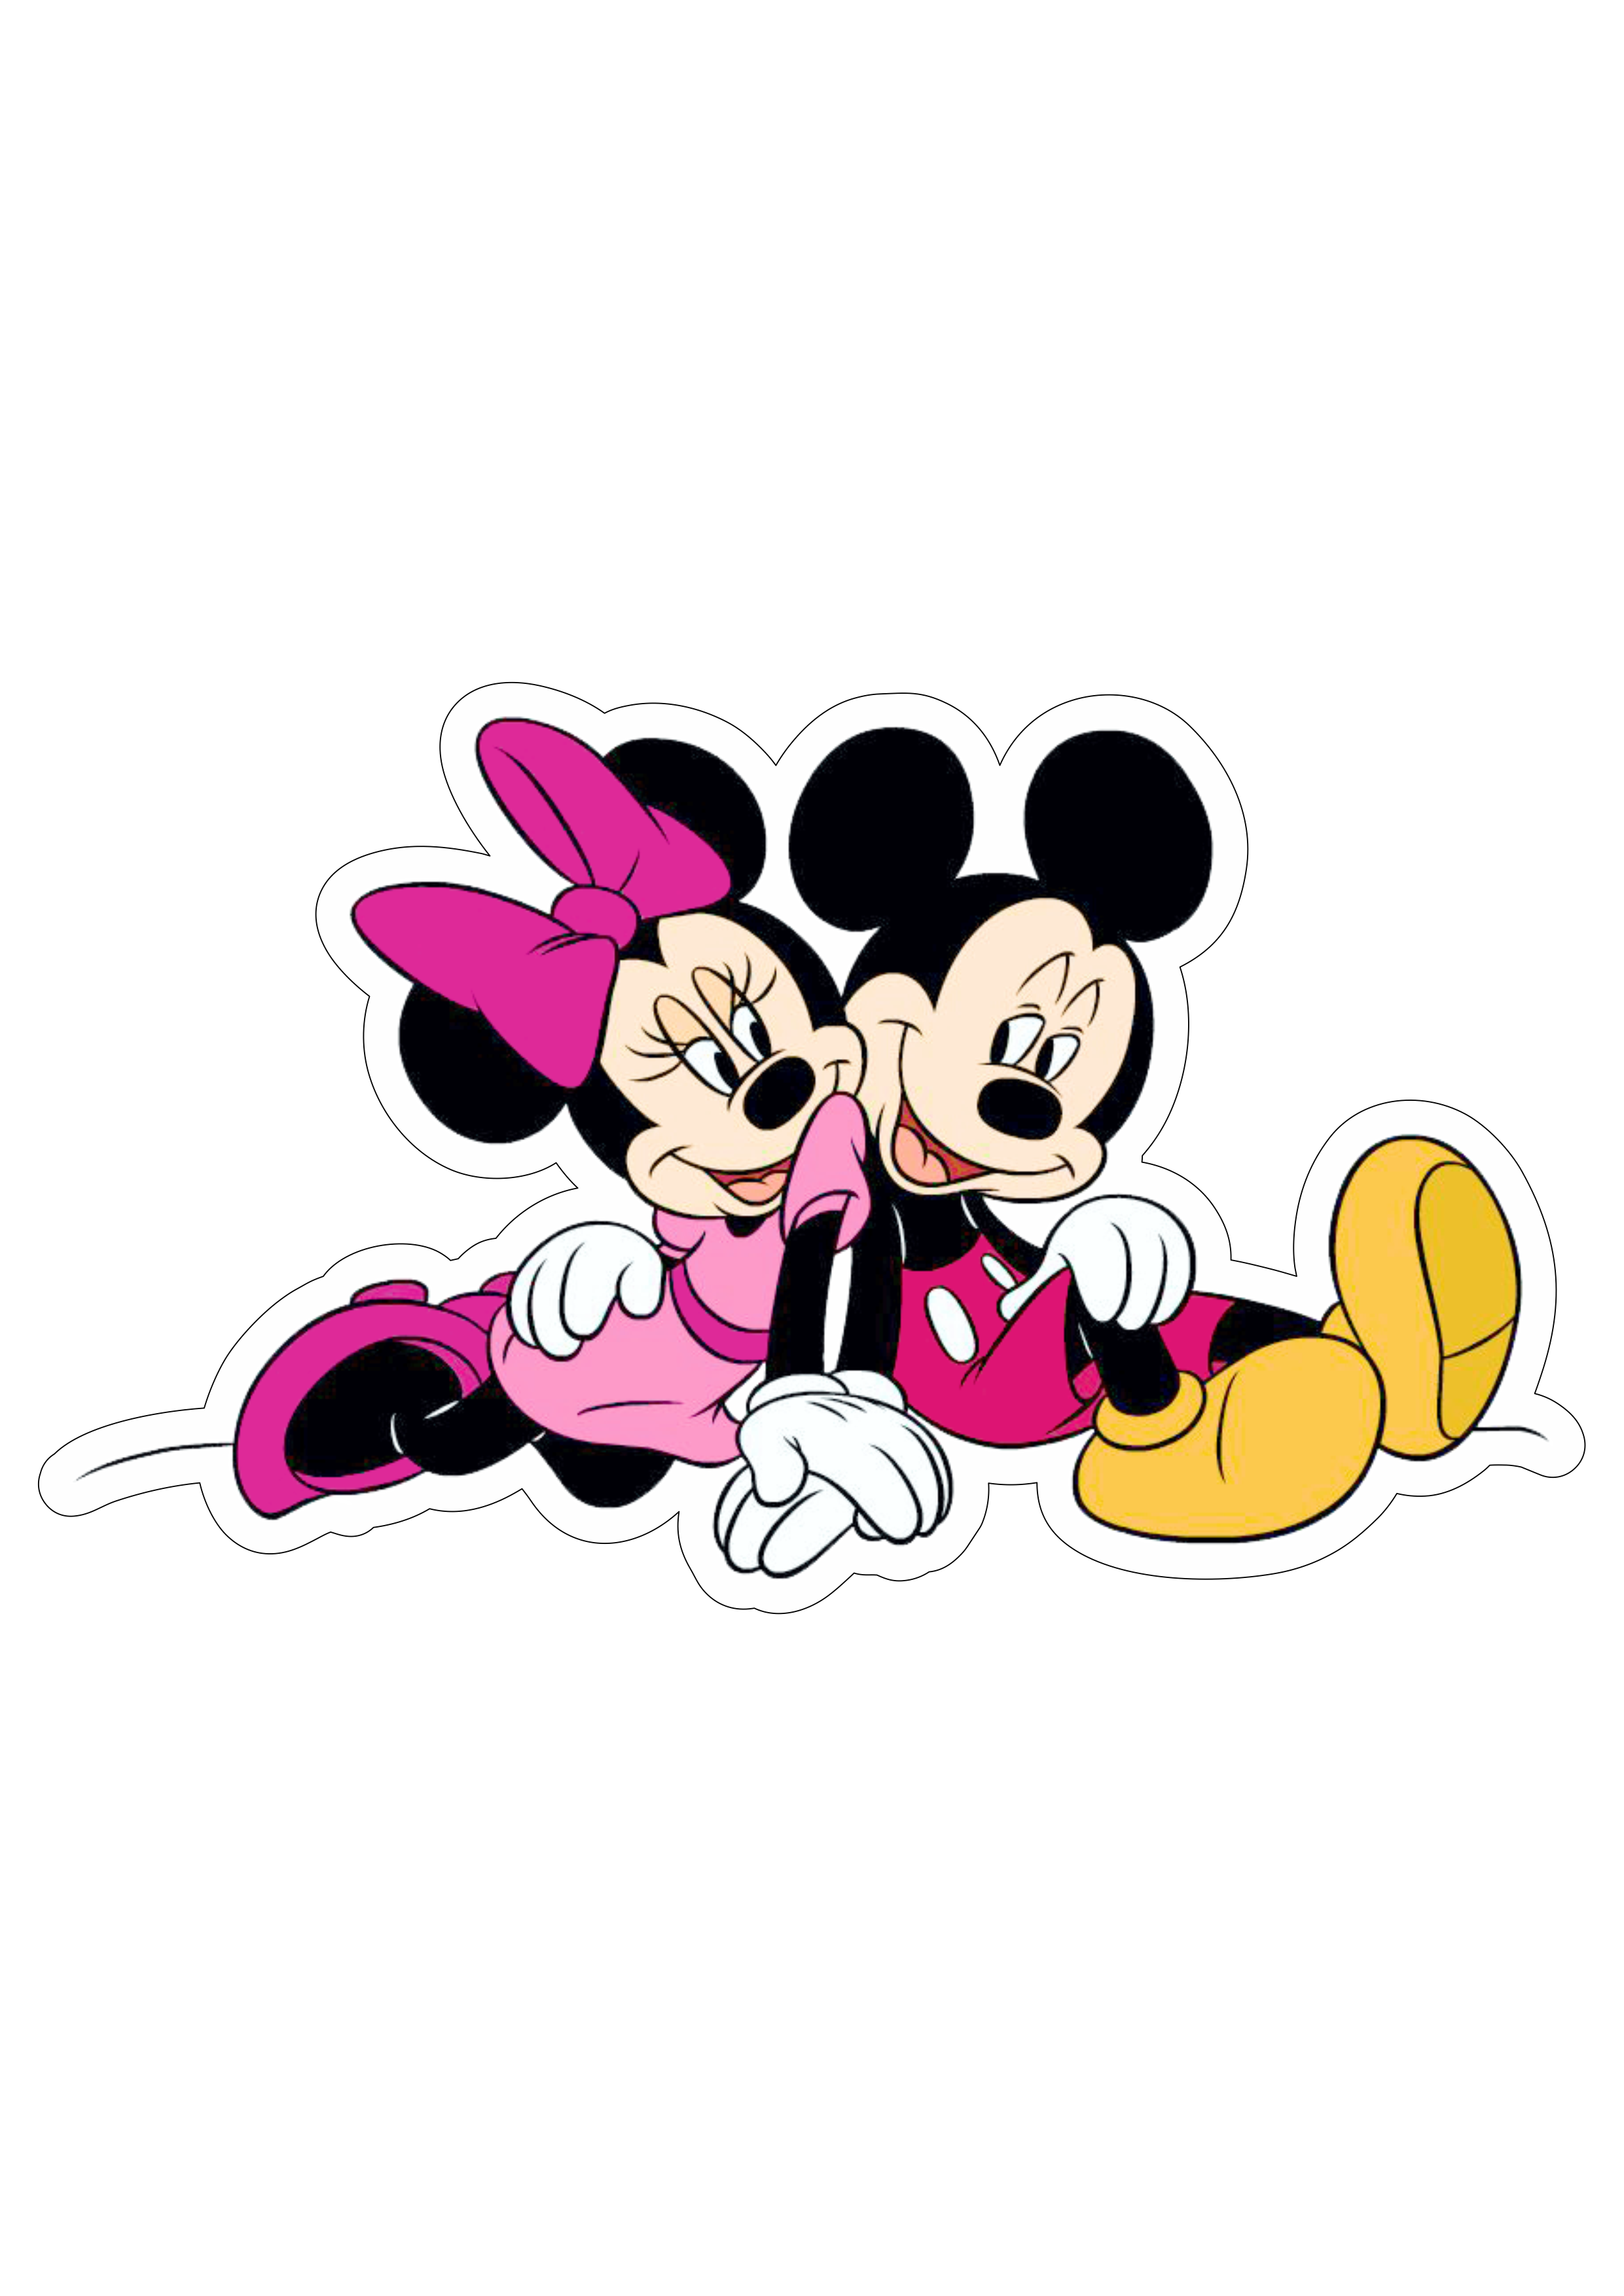 Mickey e Minnie personagens desenho infantil disney plus fundo transparente png